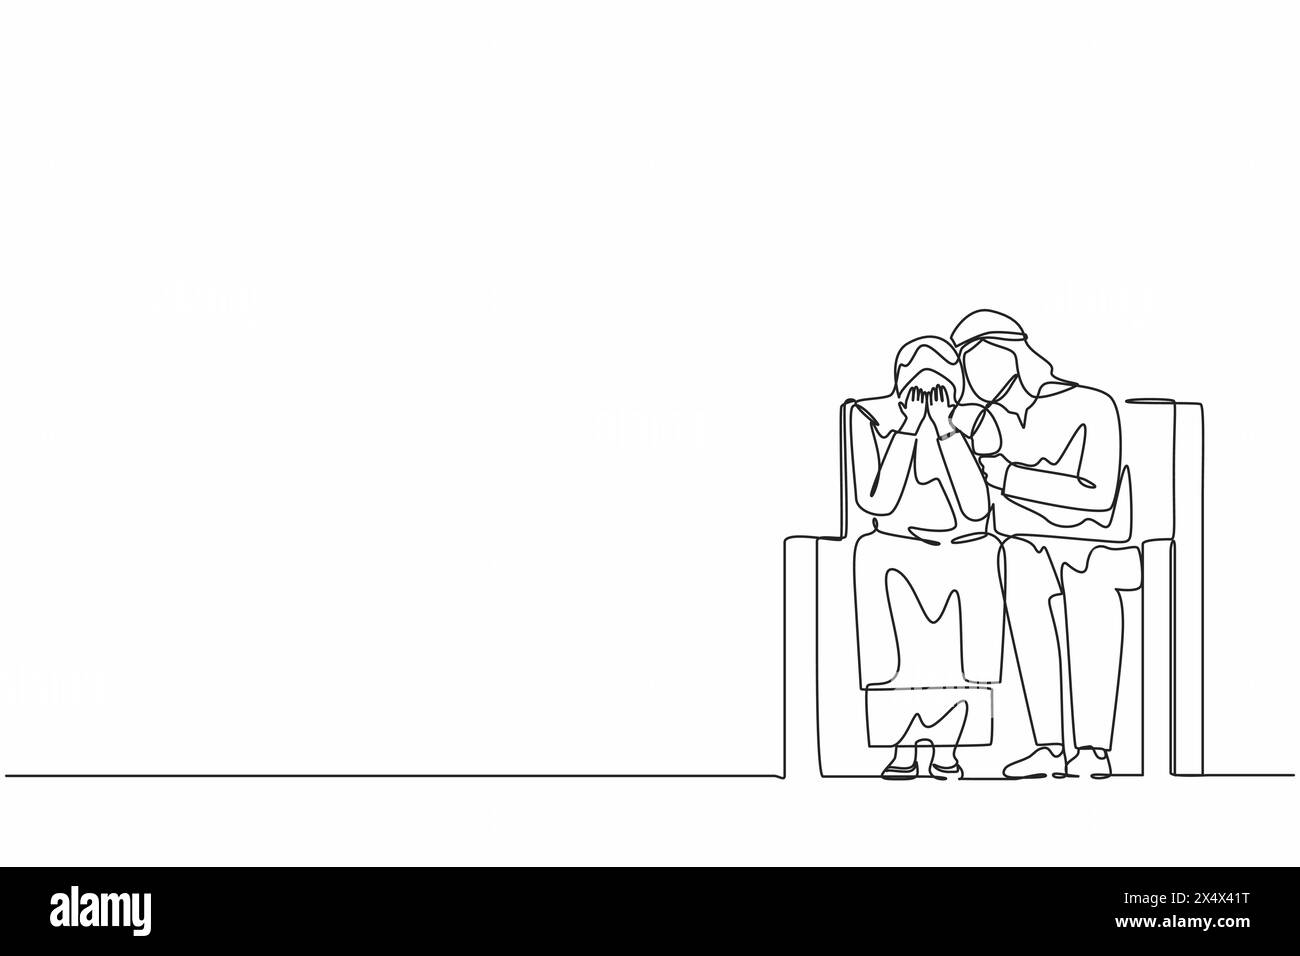 Linea singola continua disegnando un uomo arabo che si prende cura di sé seduto sul divano, abbracciando la spalla di una donna depressa e cercando di aiutarla o sostenerla. Supporto, mentale Illustrazione Vettoriale